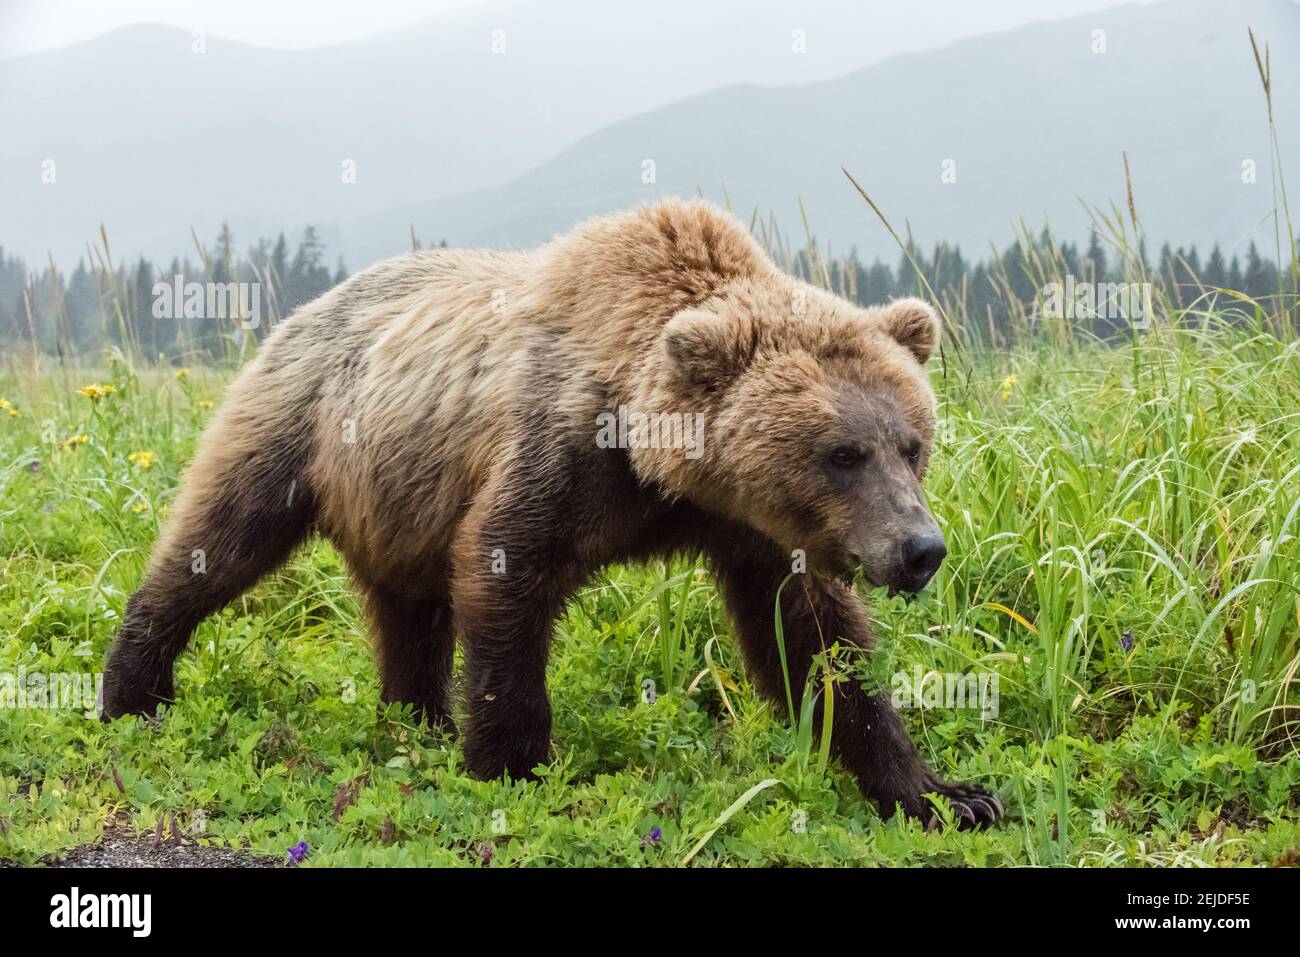 Photo en gros plan d'un ours brun sauvage dans son habitat naturel. Parc national du lac Clark, Alaska. Banque D'Images